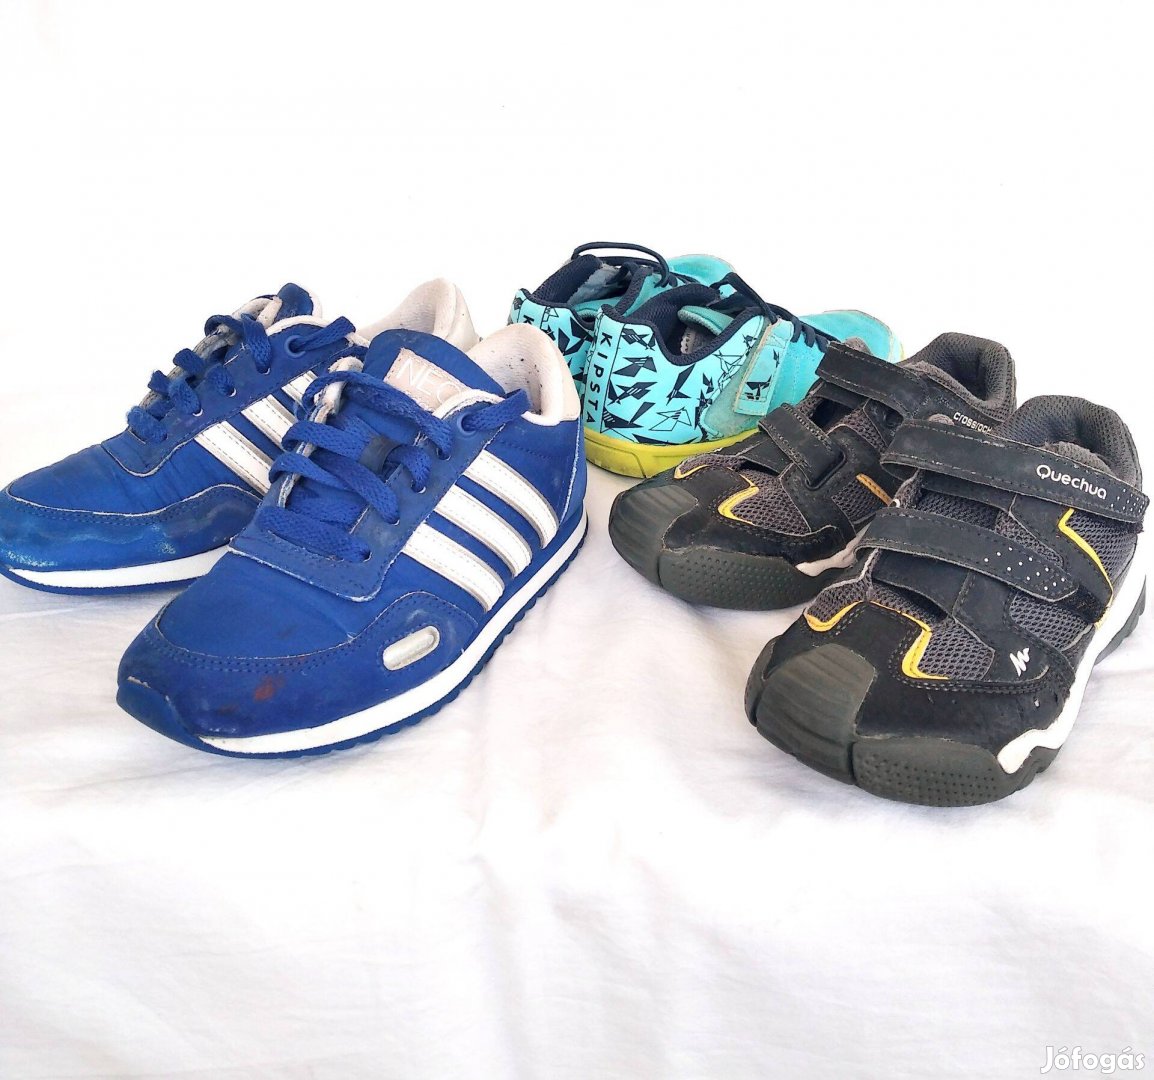 Márkás cipő csomag egyben 2000 Ft Adidas Quechua Kipsta 29-31 méretek